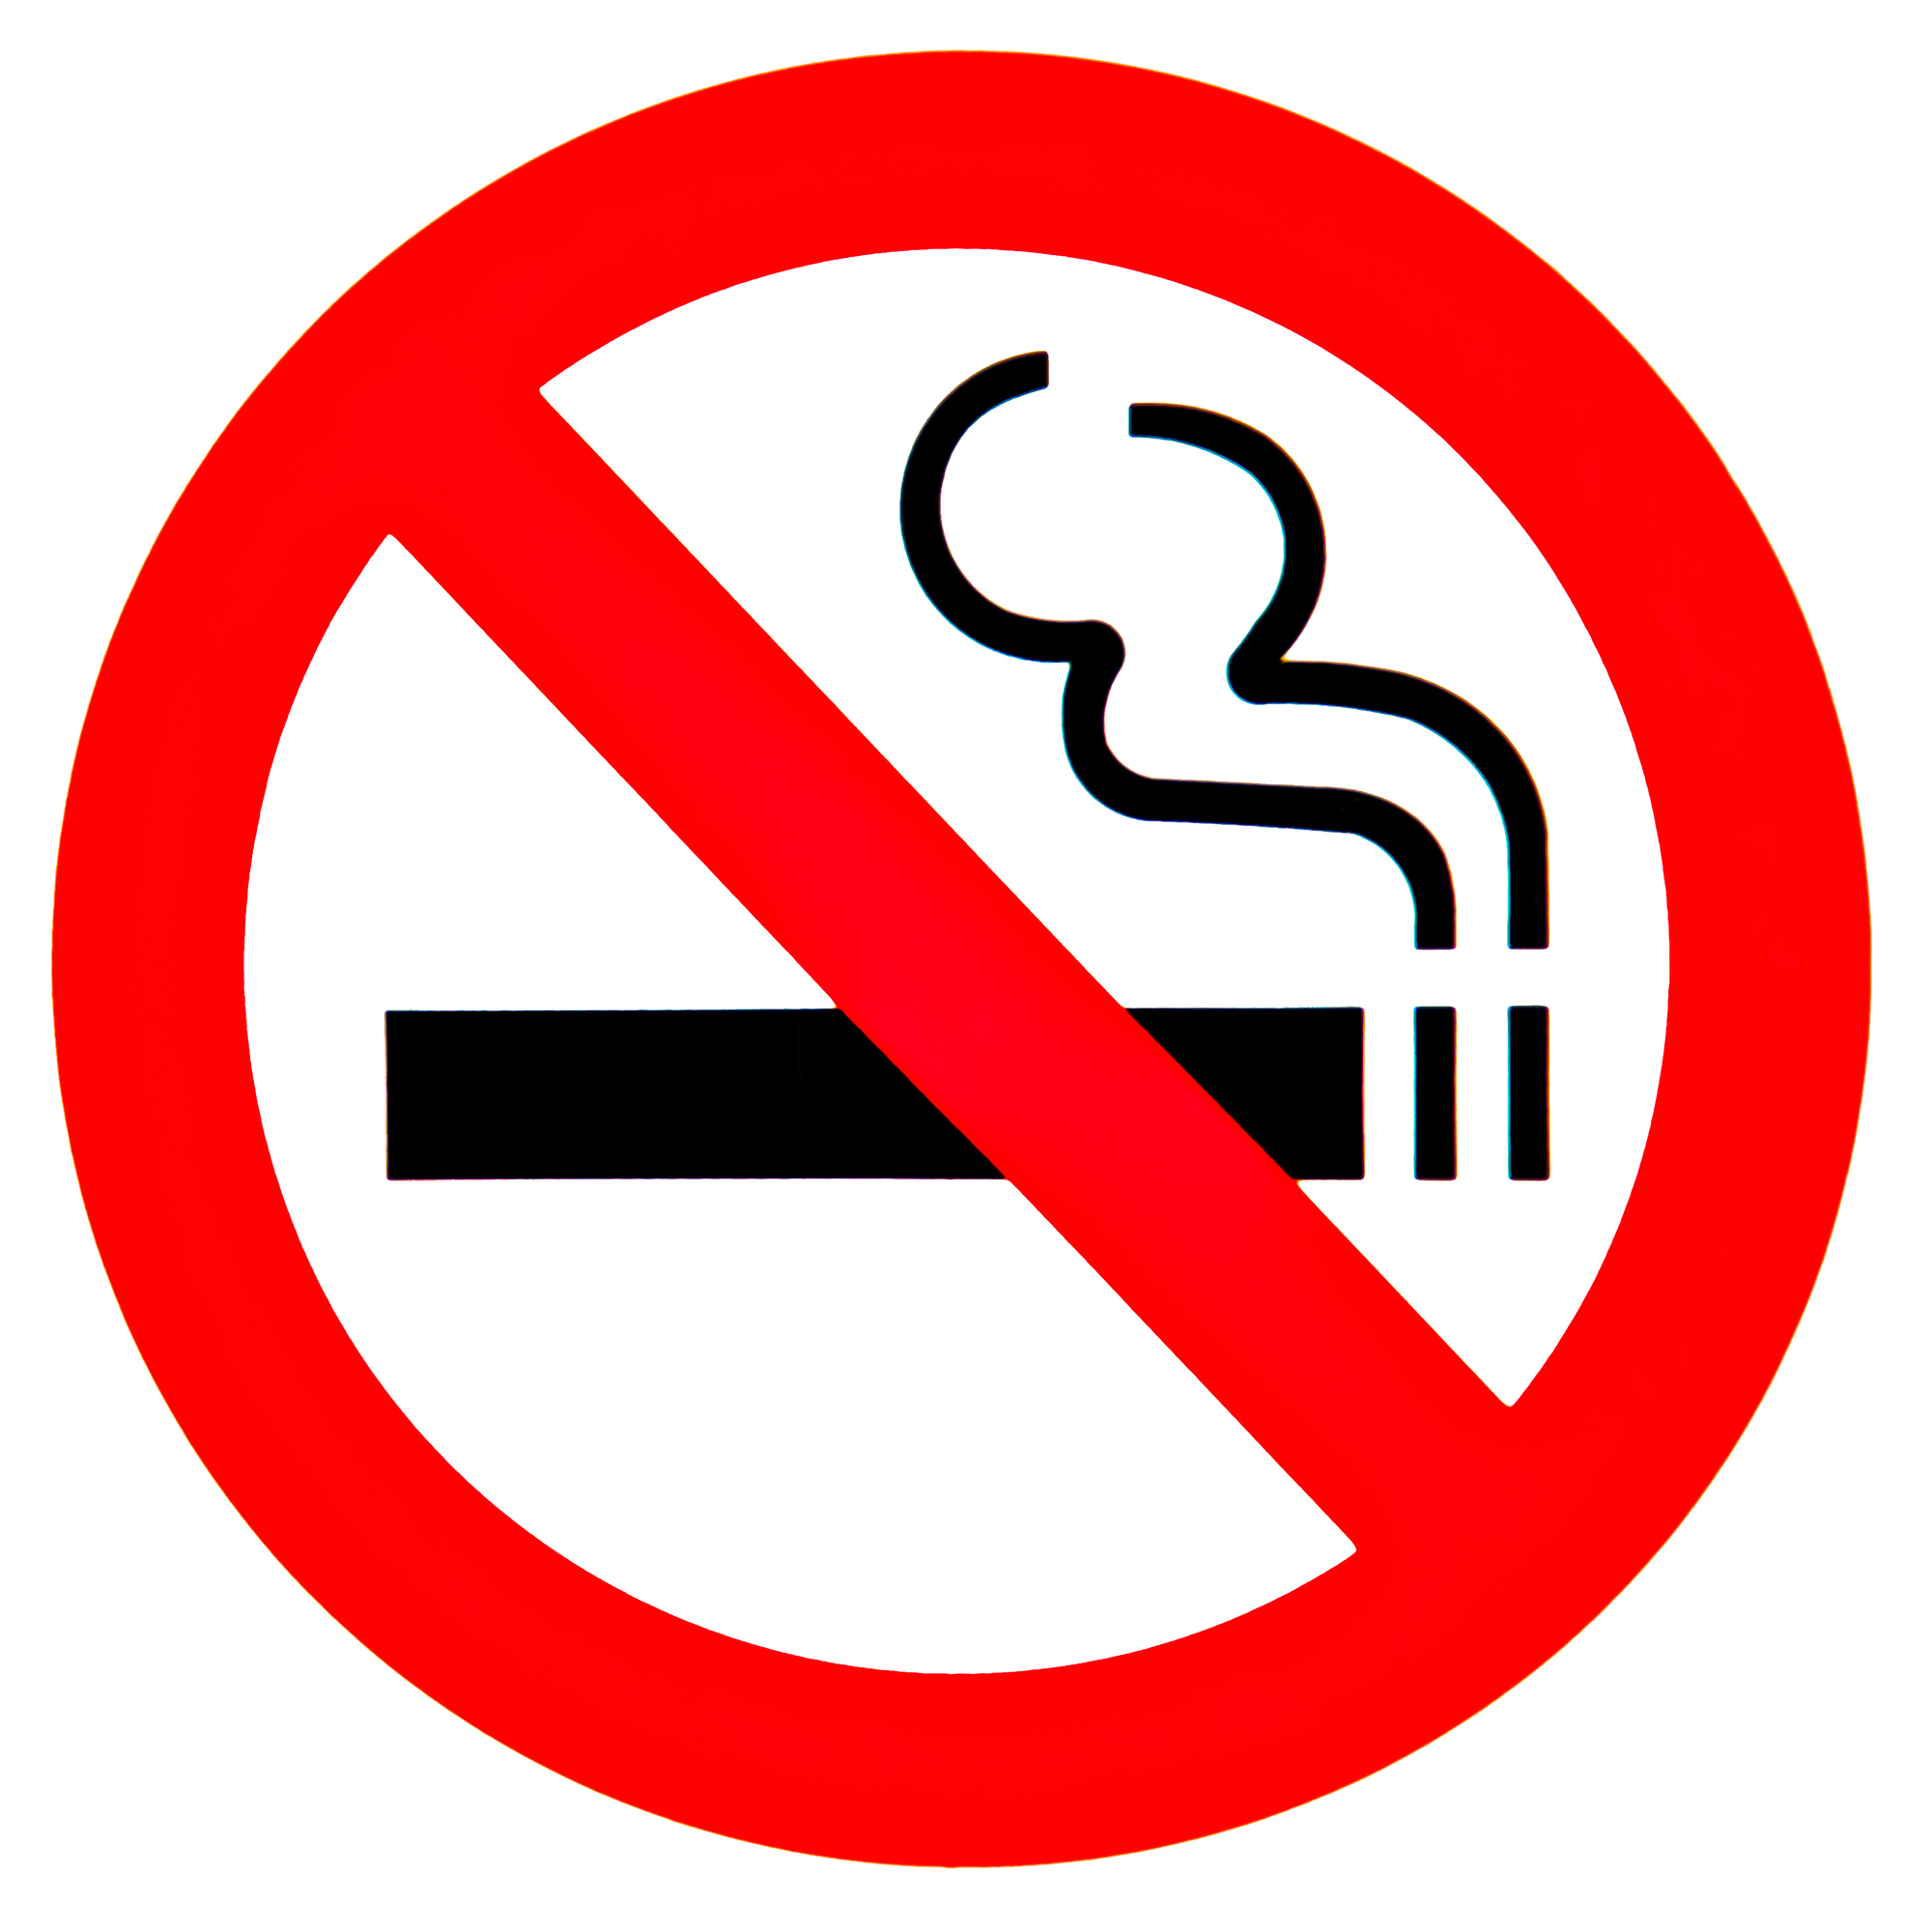 Профилактика курения у подростков